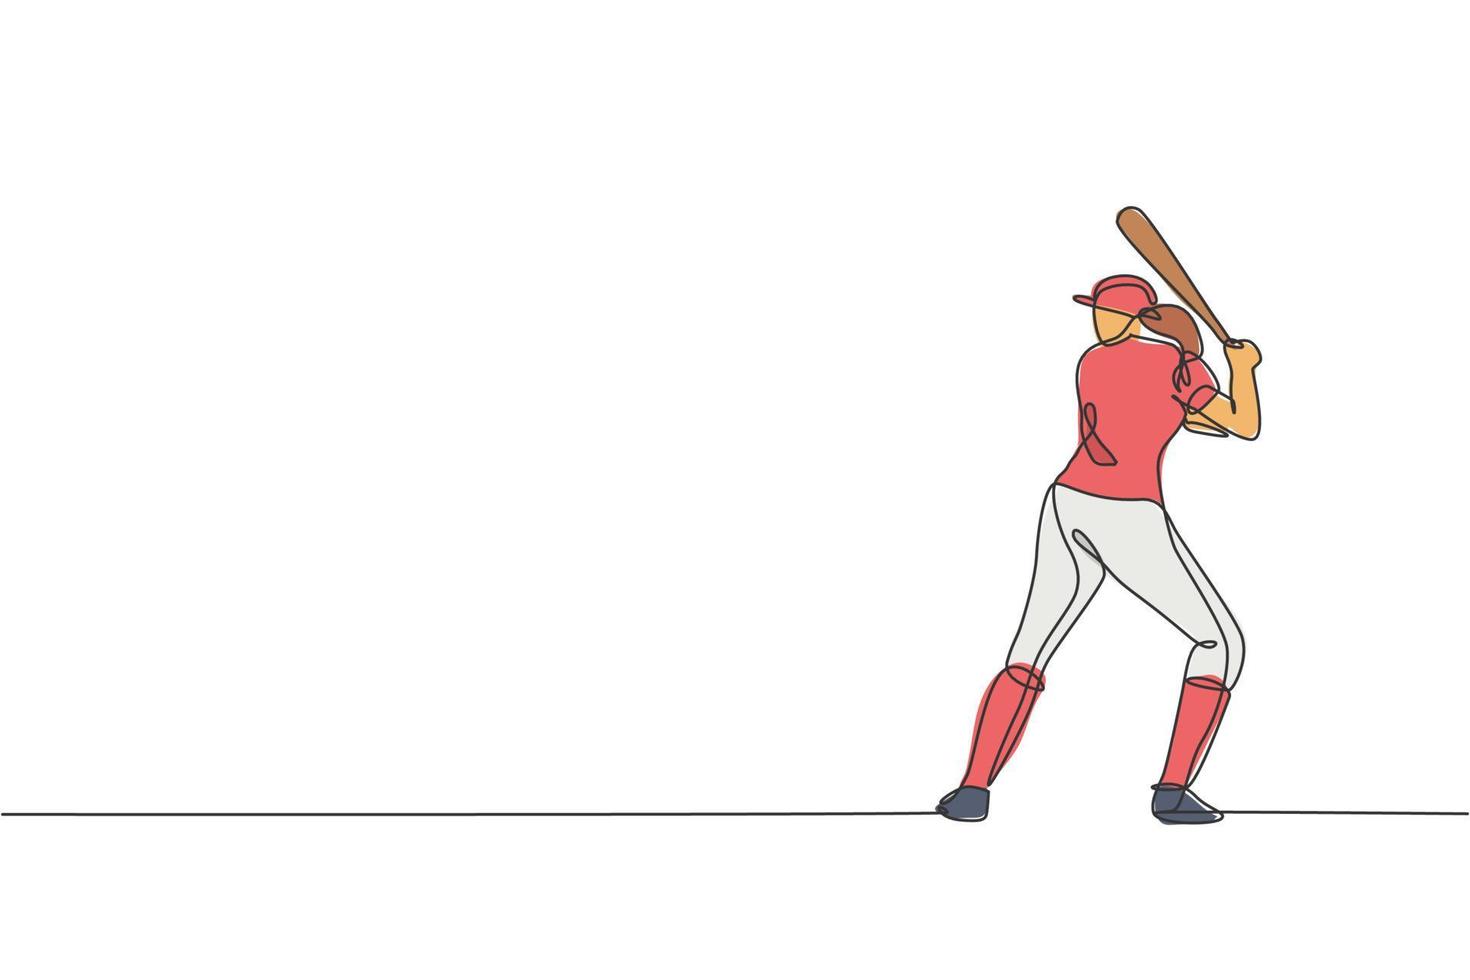 um desenho de linha contínua de prática de jogador de beisebol desportiva jovem para bater a bola no campo. conceito de esporte competitivo. ilustração vetorial de desenho de linha única dinâmica para cartaz de promoção vetor